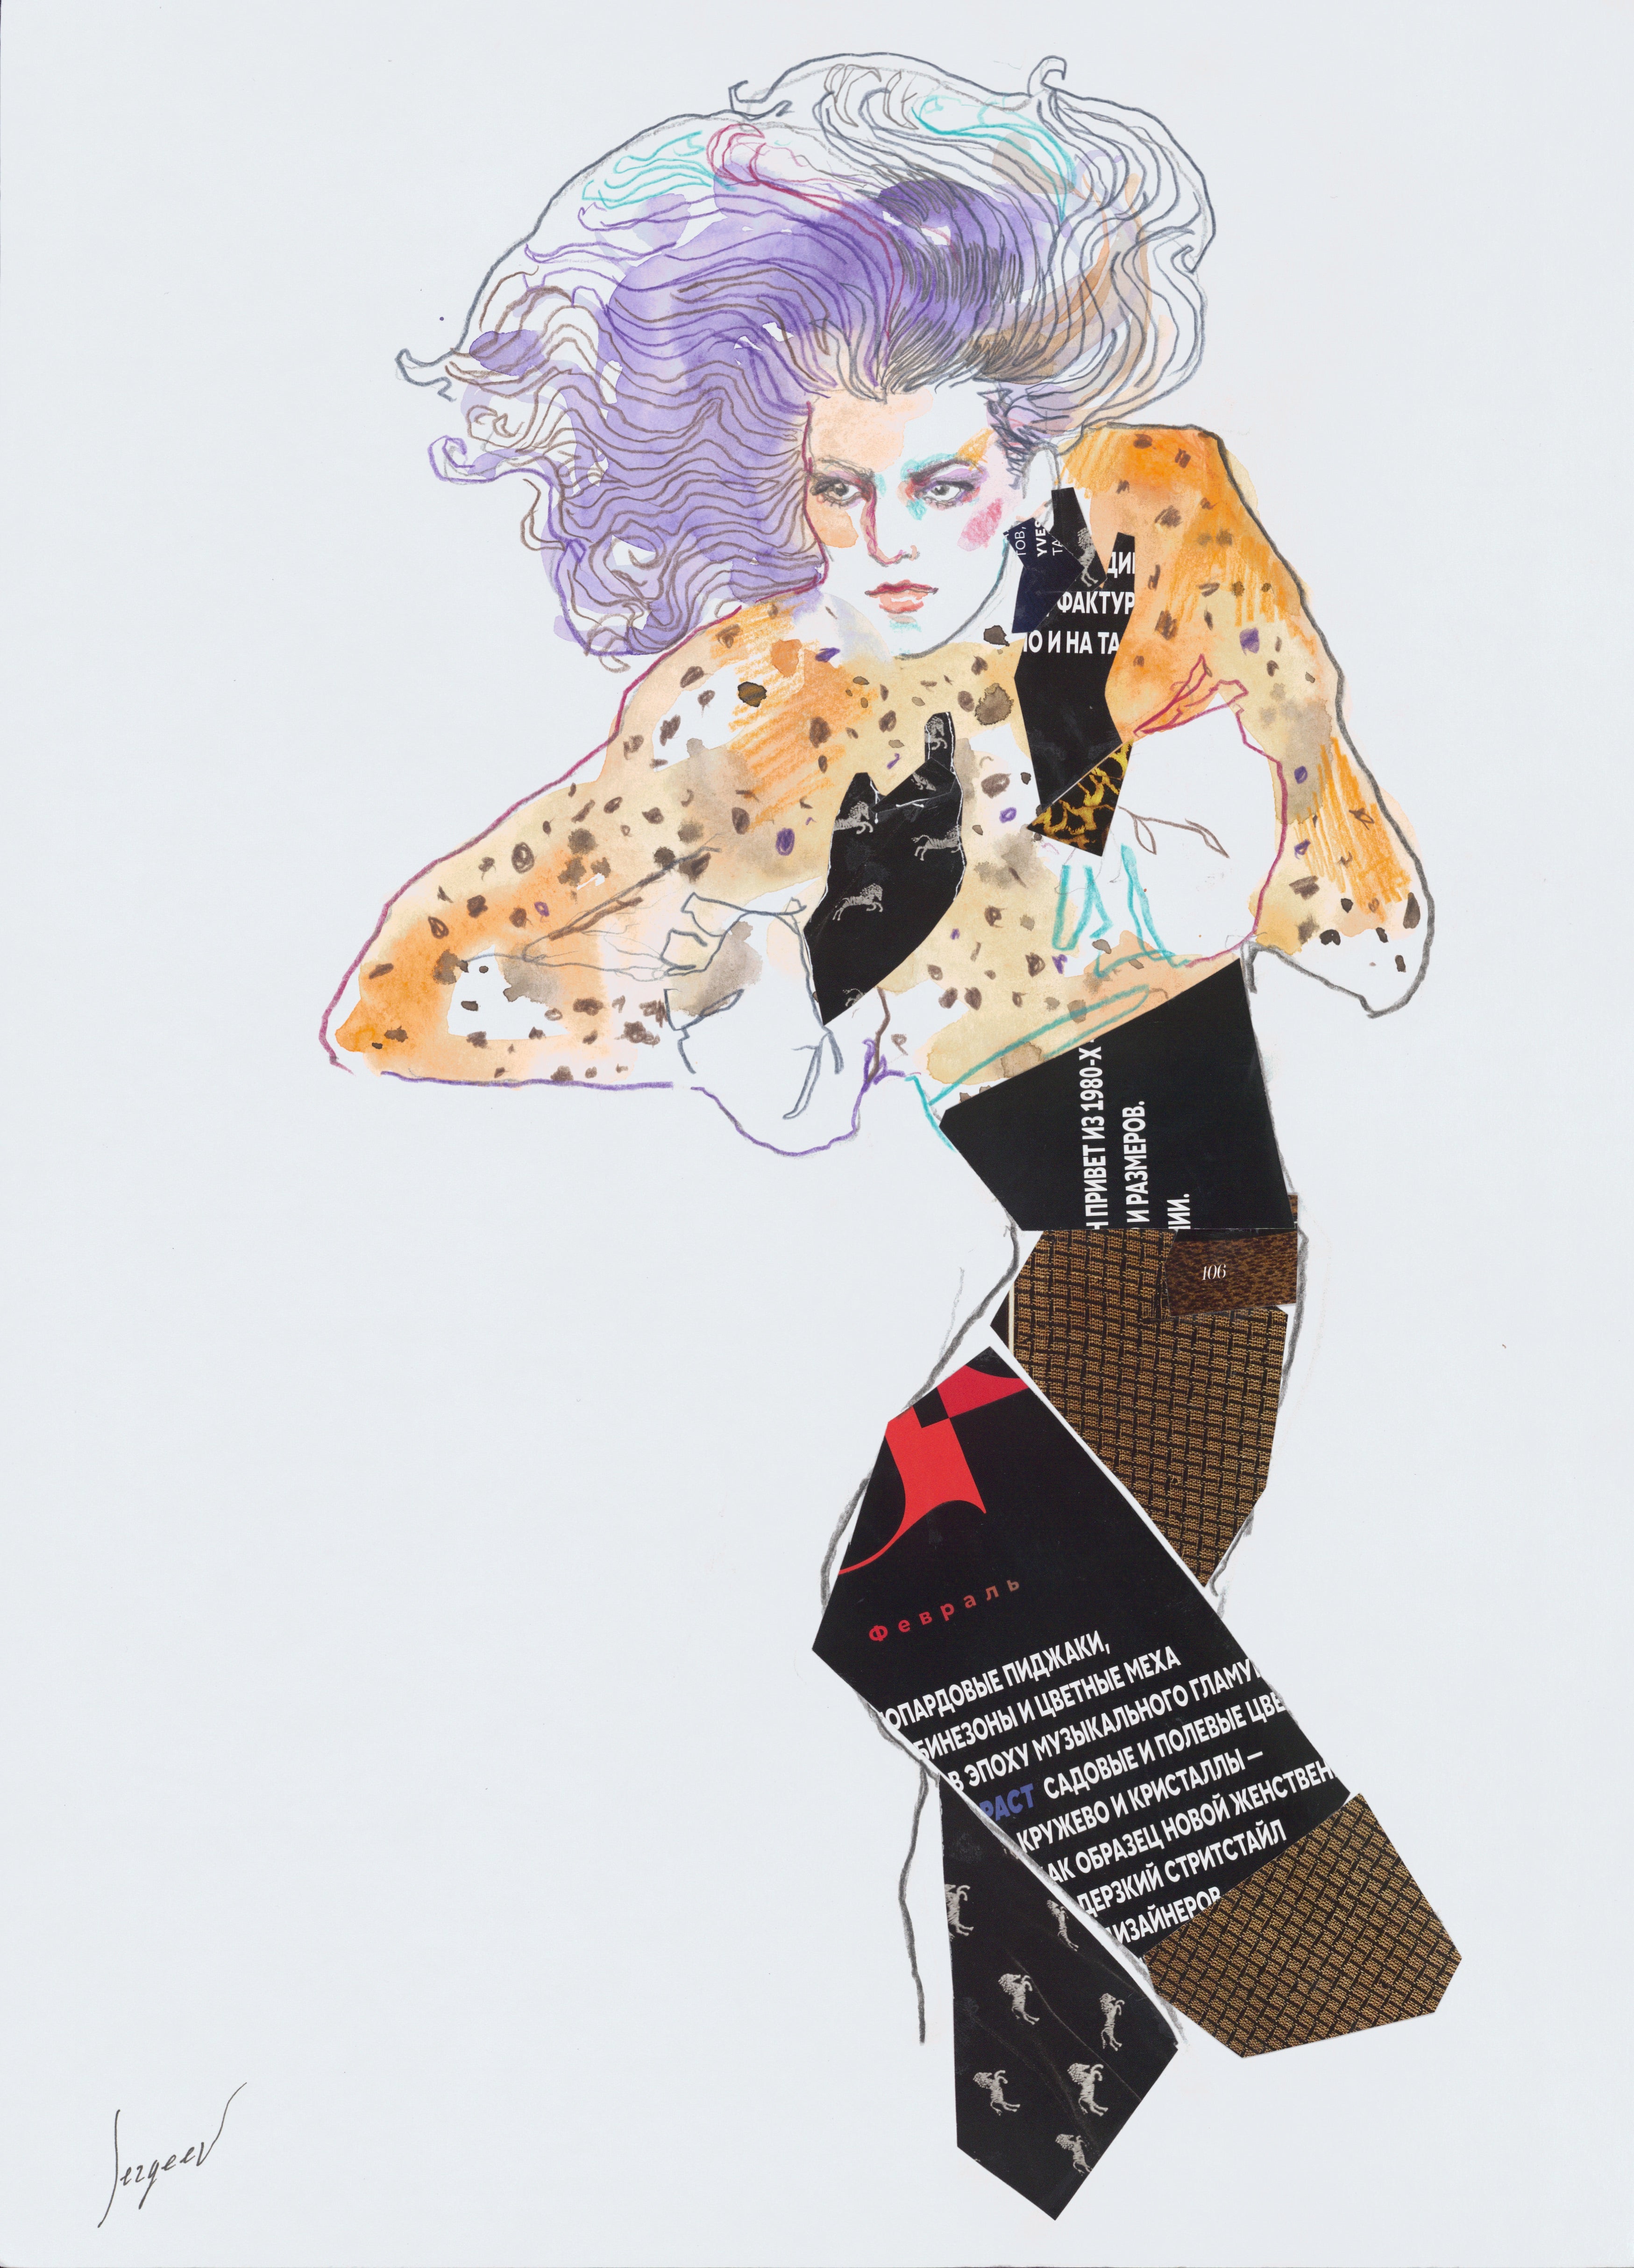 Retrouvez chez Acid Gallery les oeuvres de Max Sergeev galerie d'art contemporain, Vieux Lille | Aquarelle et crayon sur papier Watercolor and pencil on paper Dimensions A3 29,7 x 42 cm Unique 2019